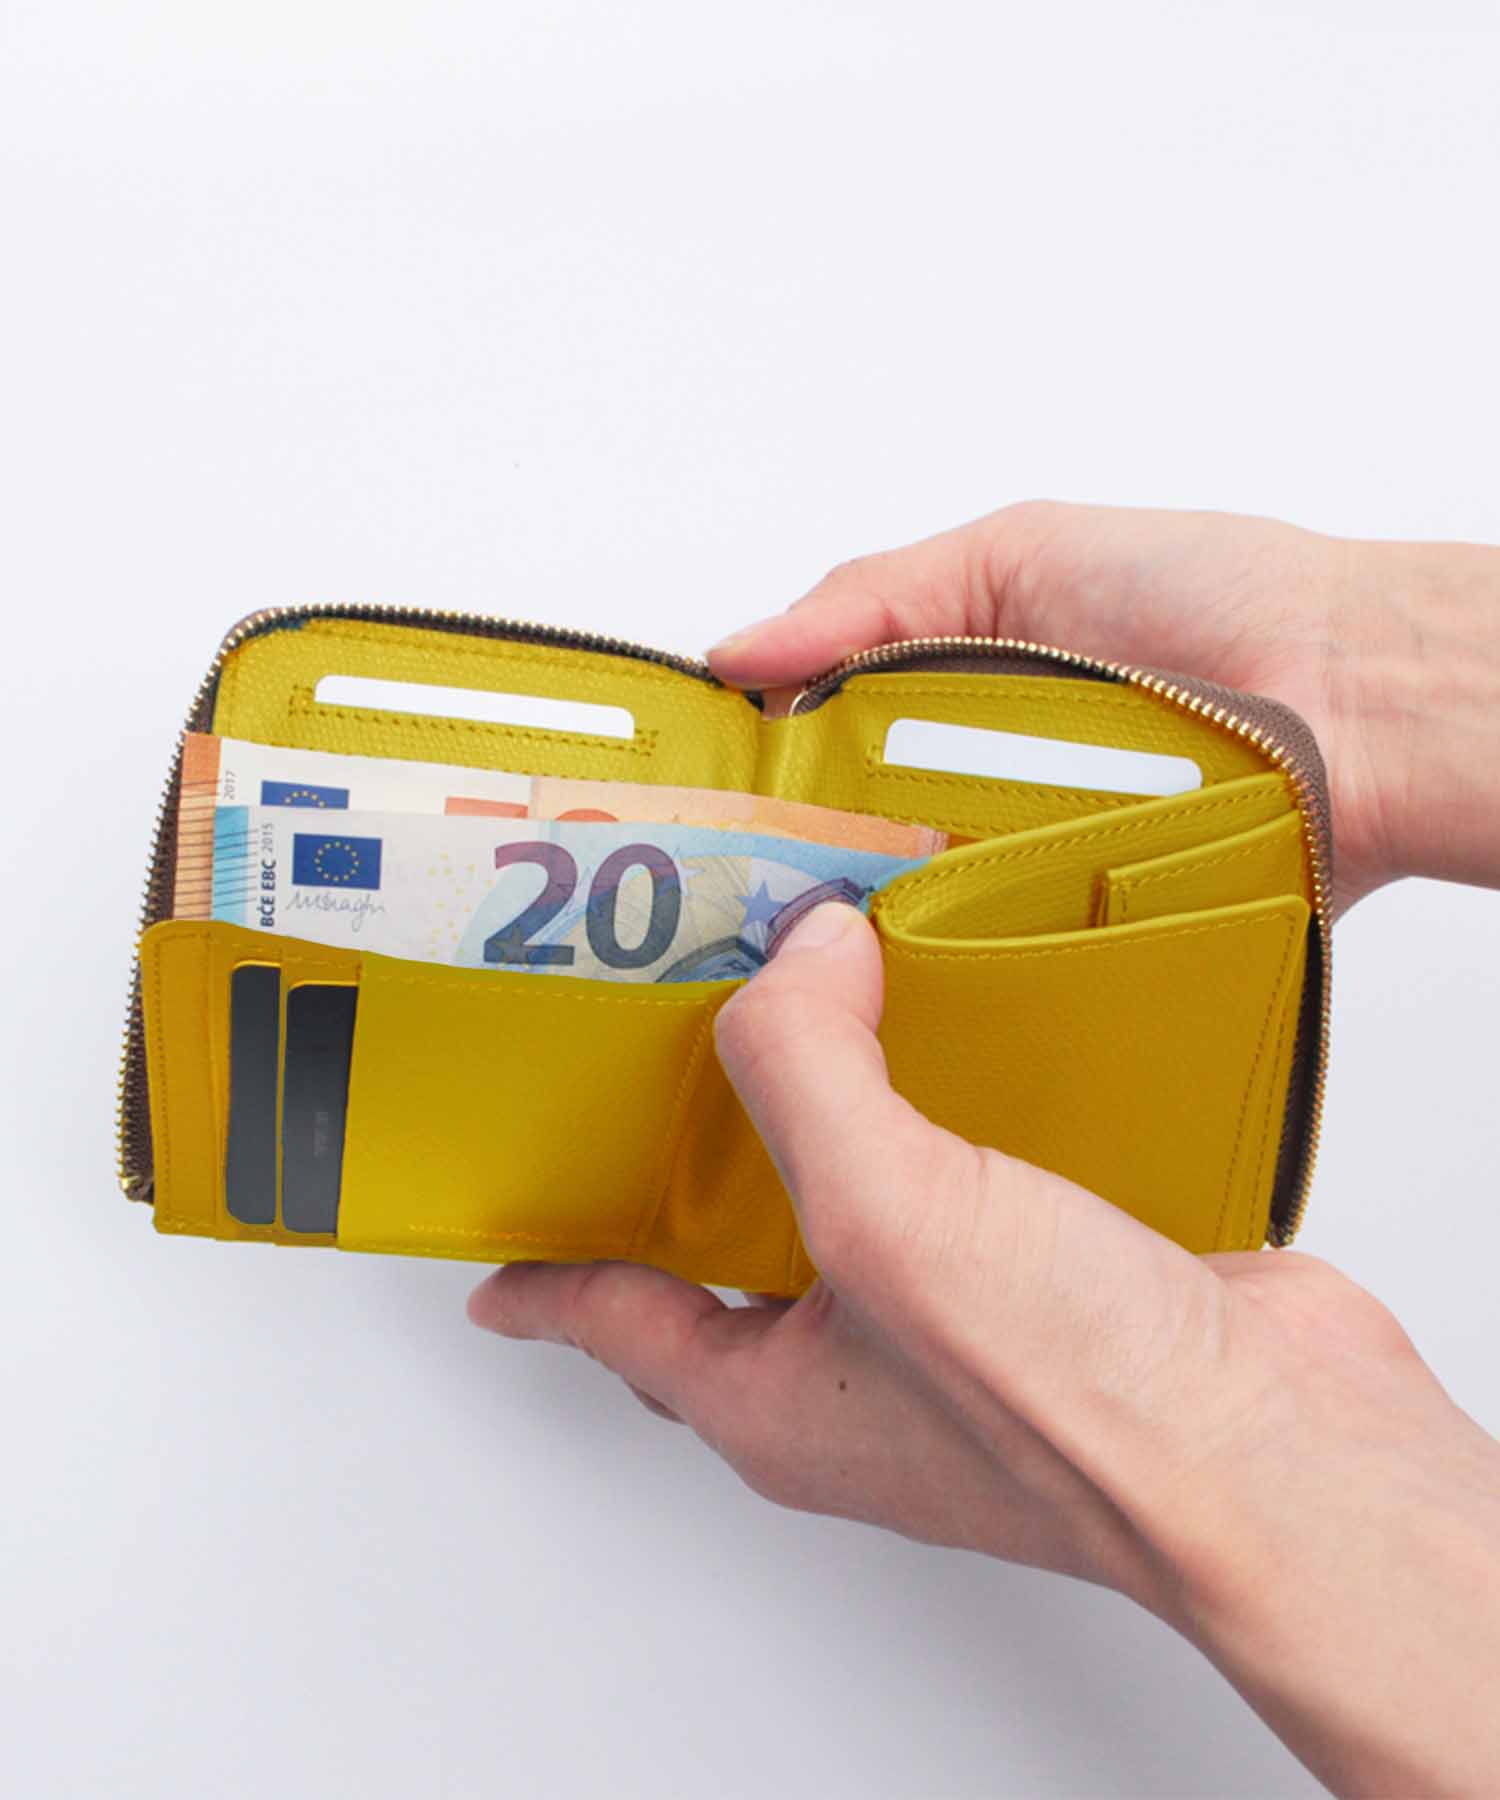 リザード型押しレザー 二つ折りL字型財布【VIOLAd'ORO/ヴィオラドーロ】